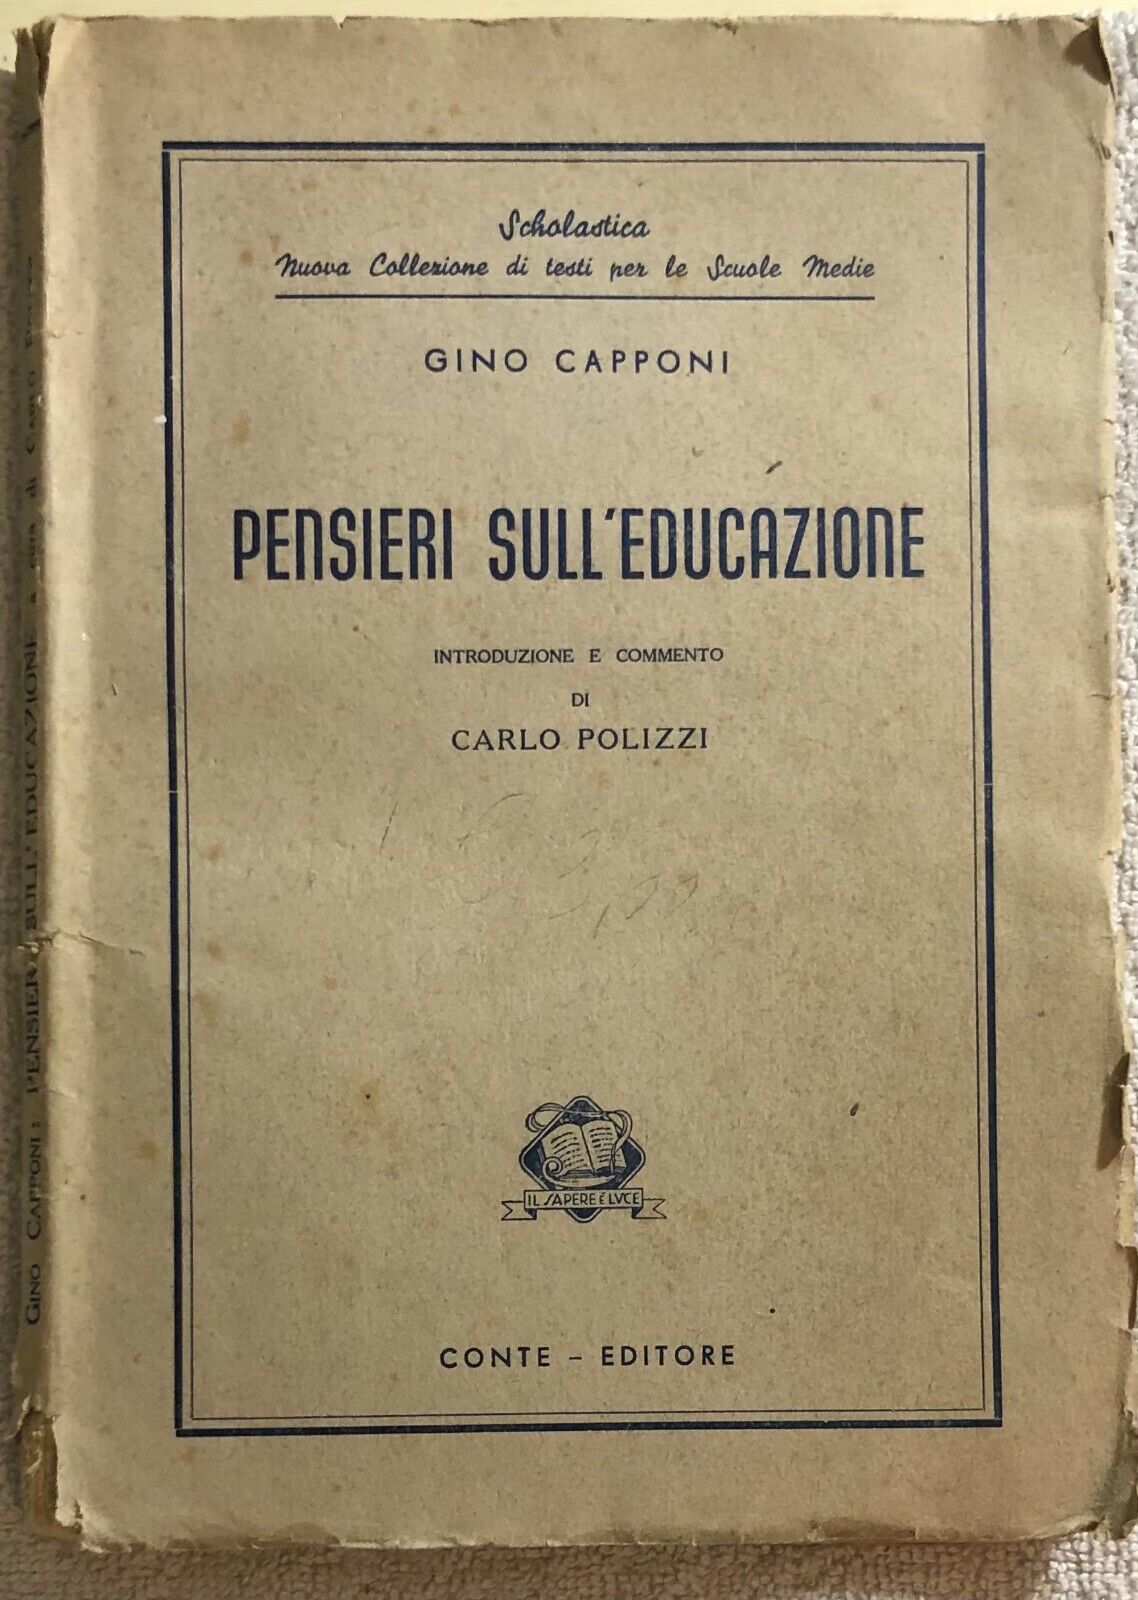 Pensieri sulL'educazione di Gino Capponi,  1950,  Conte - Editore